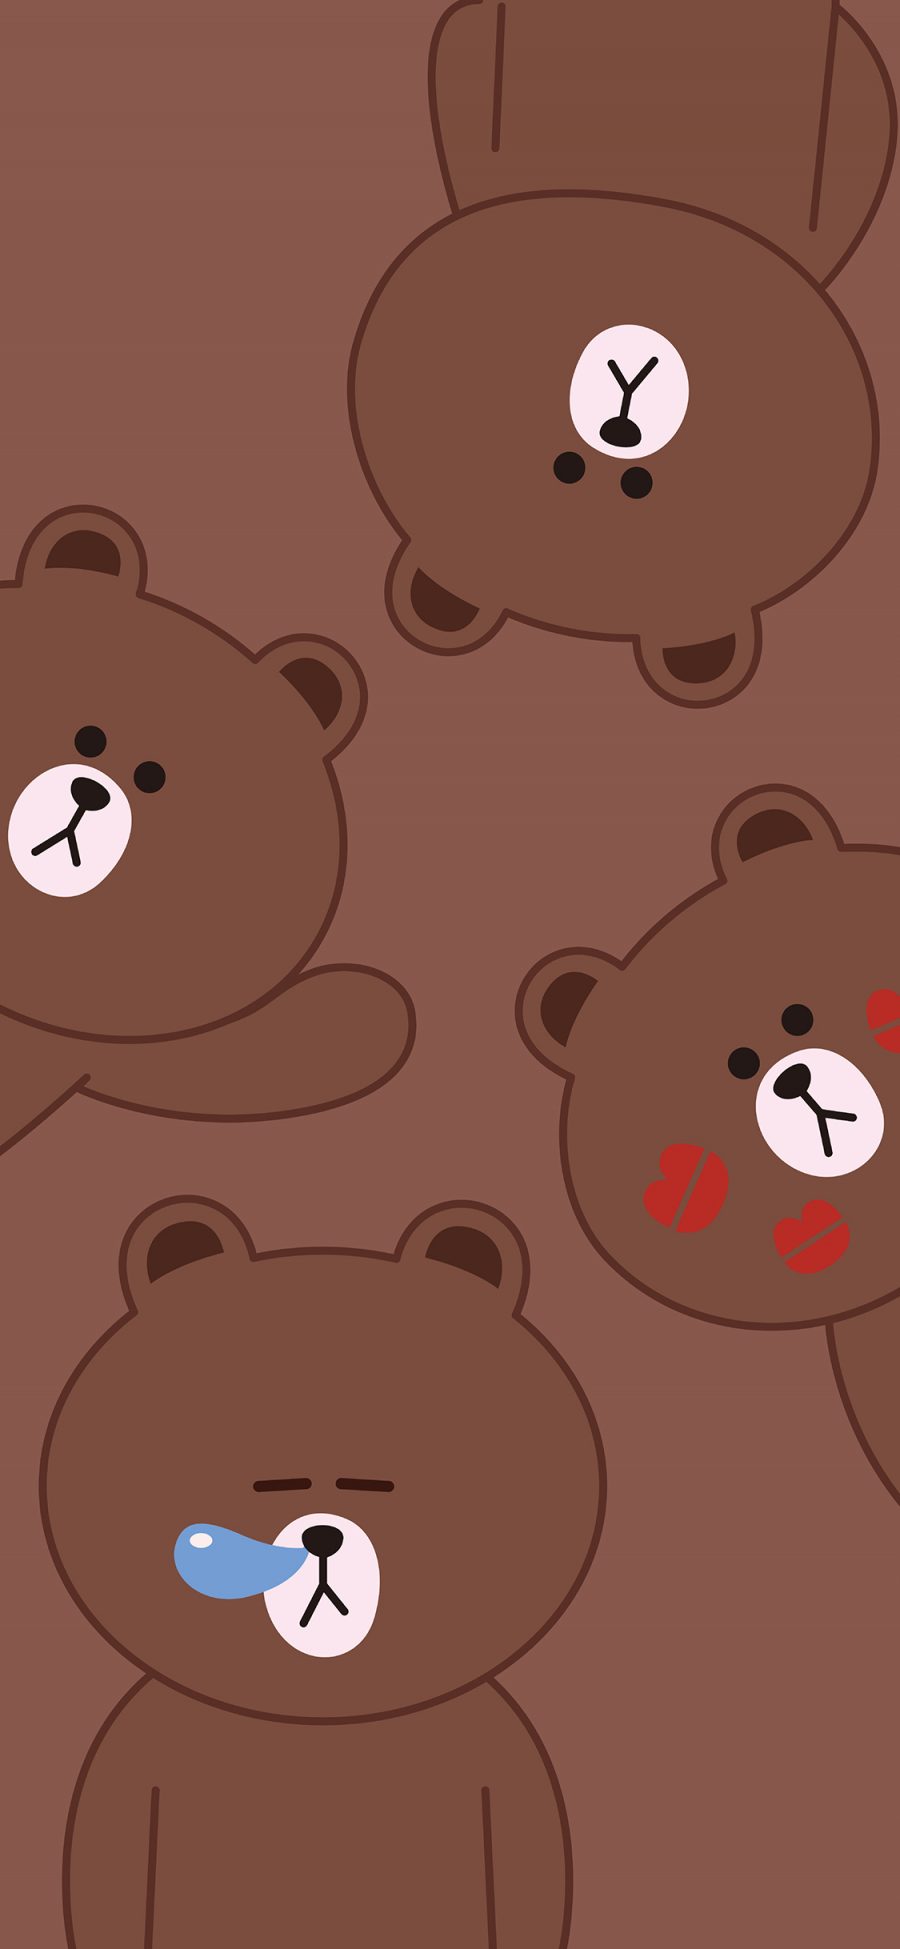 [2436×1125]布朗熊 卡通 棕色 可爱（壁纸来源：@LINEFRIENDS壁纸分享) 苹果手机动漫壁纸图片